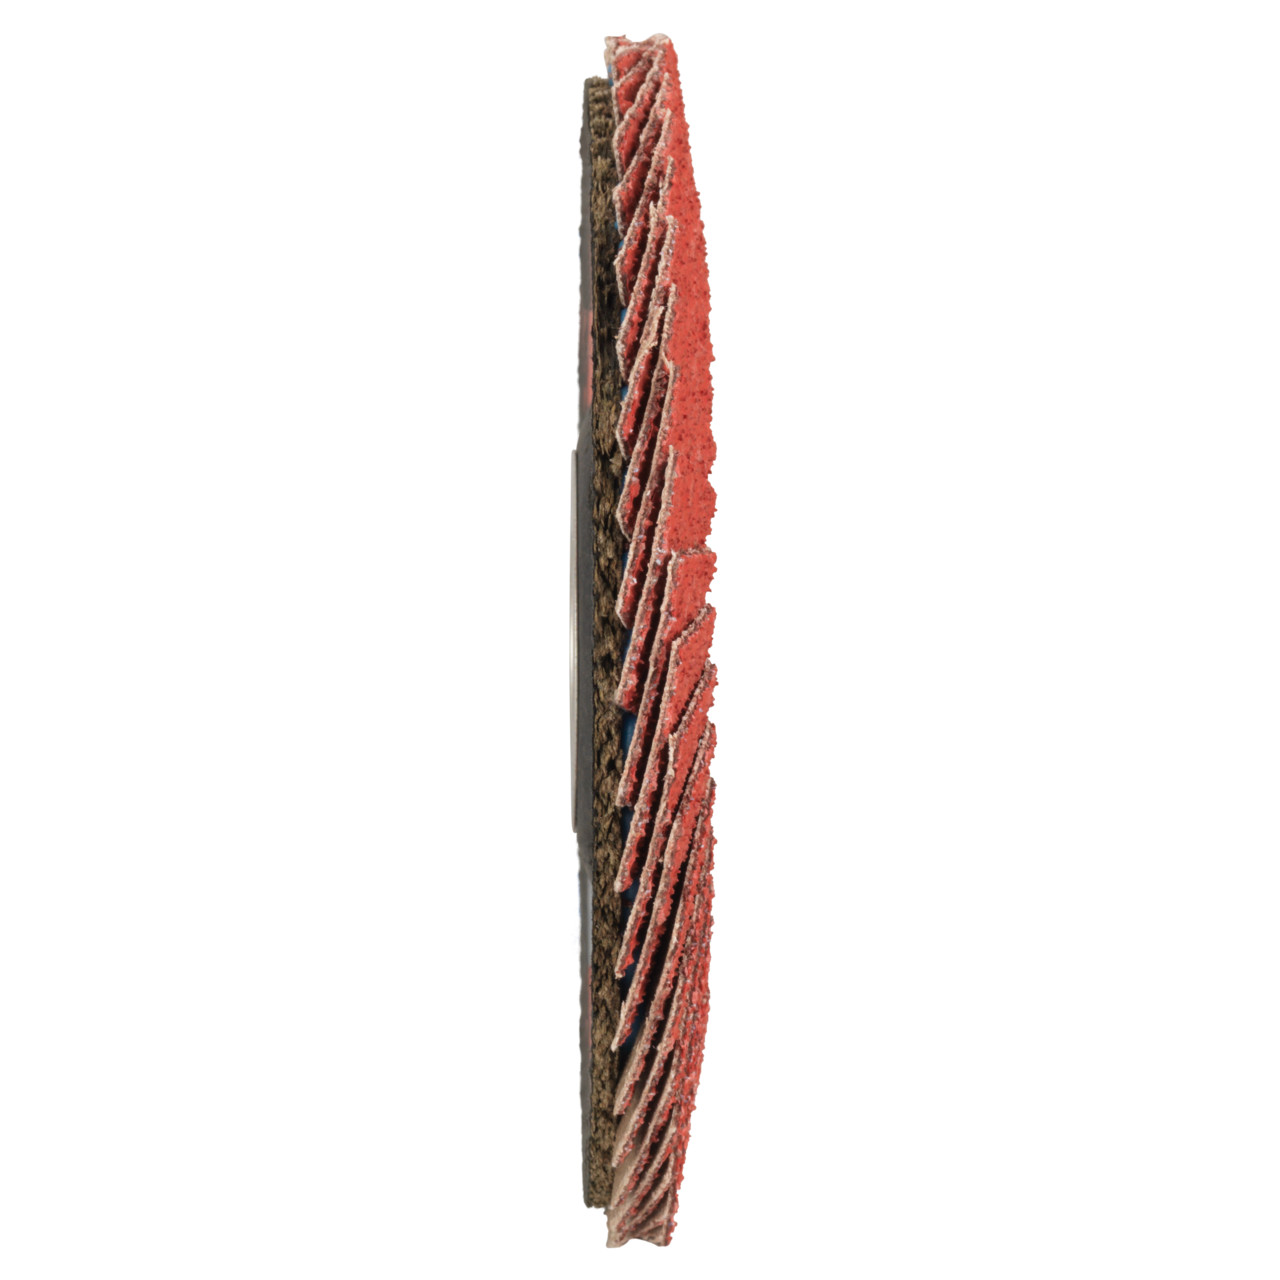 Tyrolit Getande borgring DxH 115x22,2 CERAMIC voor roestvrij staal, P60, vorm: 27A - slingerontwerp (glasvezeldragerhuisontwerp), Art. 645132